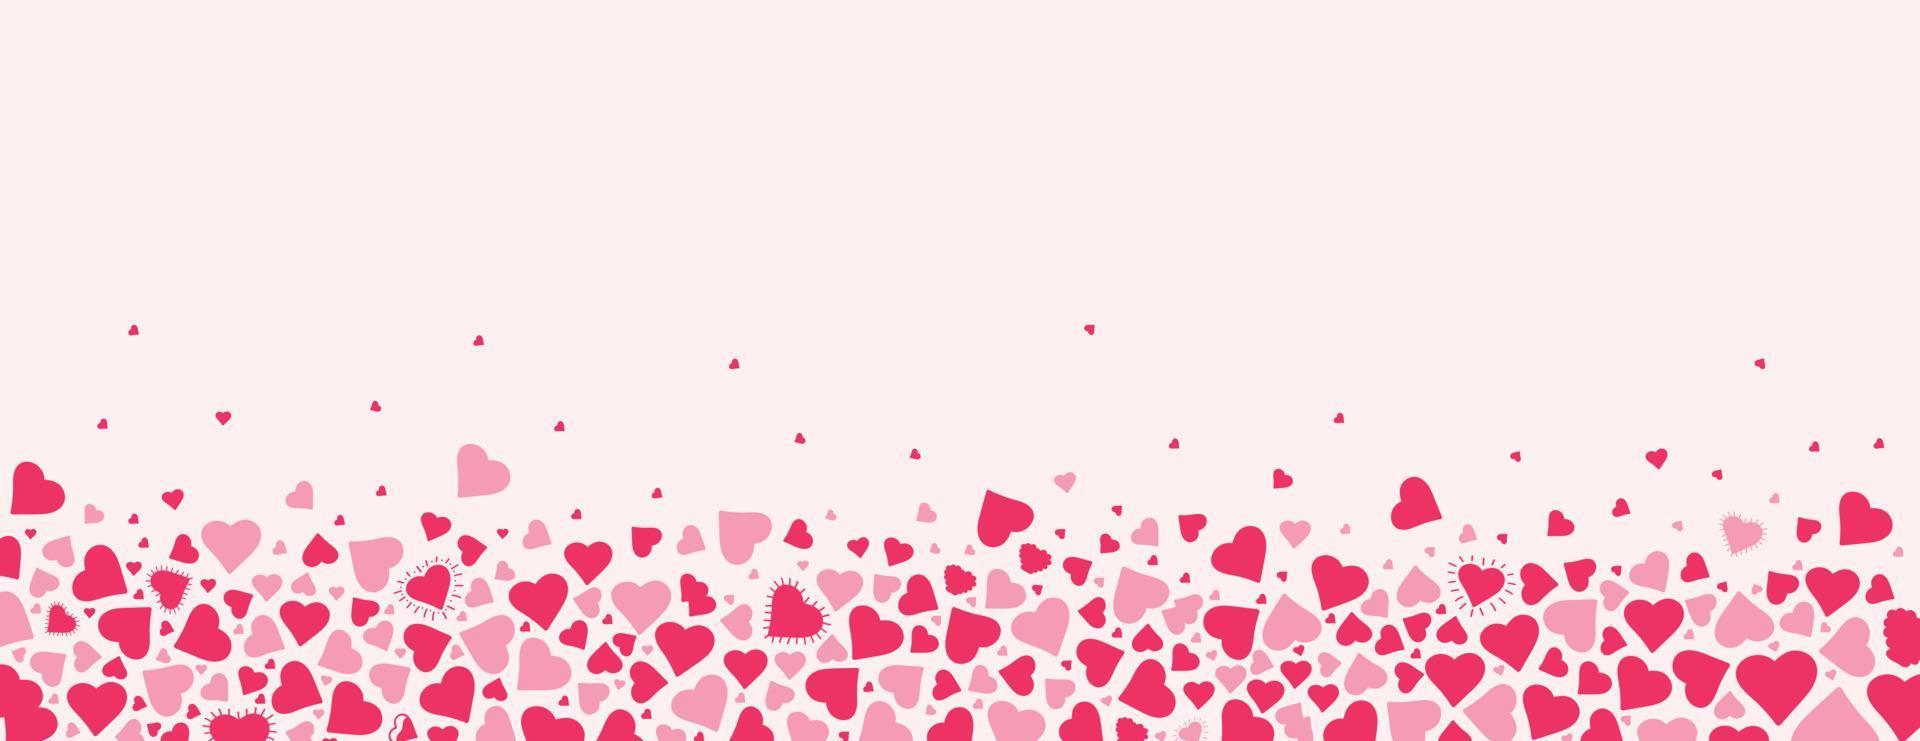 fundo horizontal festivo com diferentes corações rosa em fundo pastel. design moderno desenhado à mão para dia dos namorados, dia das mães ou conceitos de amor. ilustração vetorial vetor